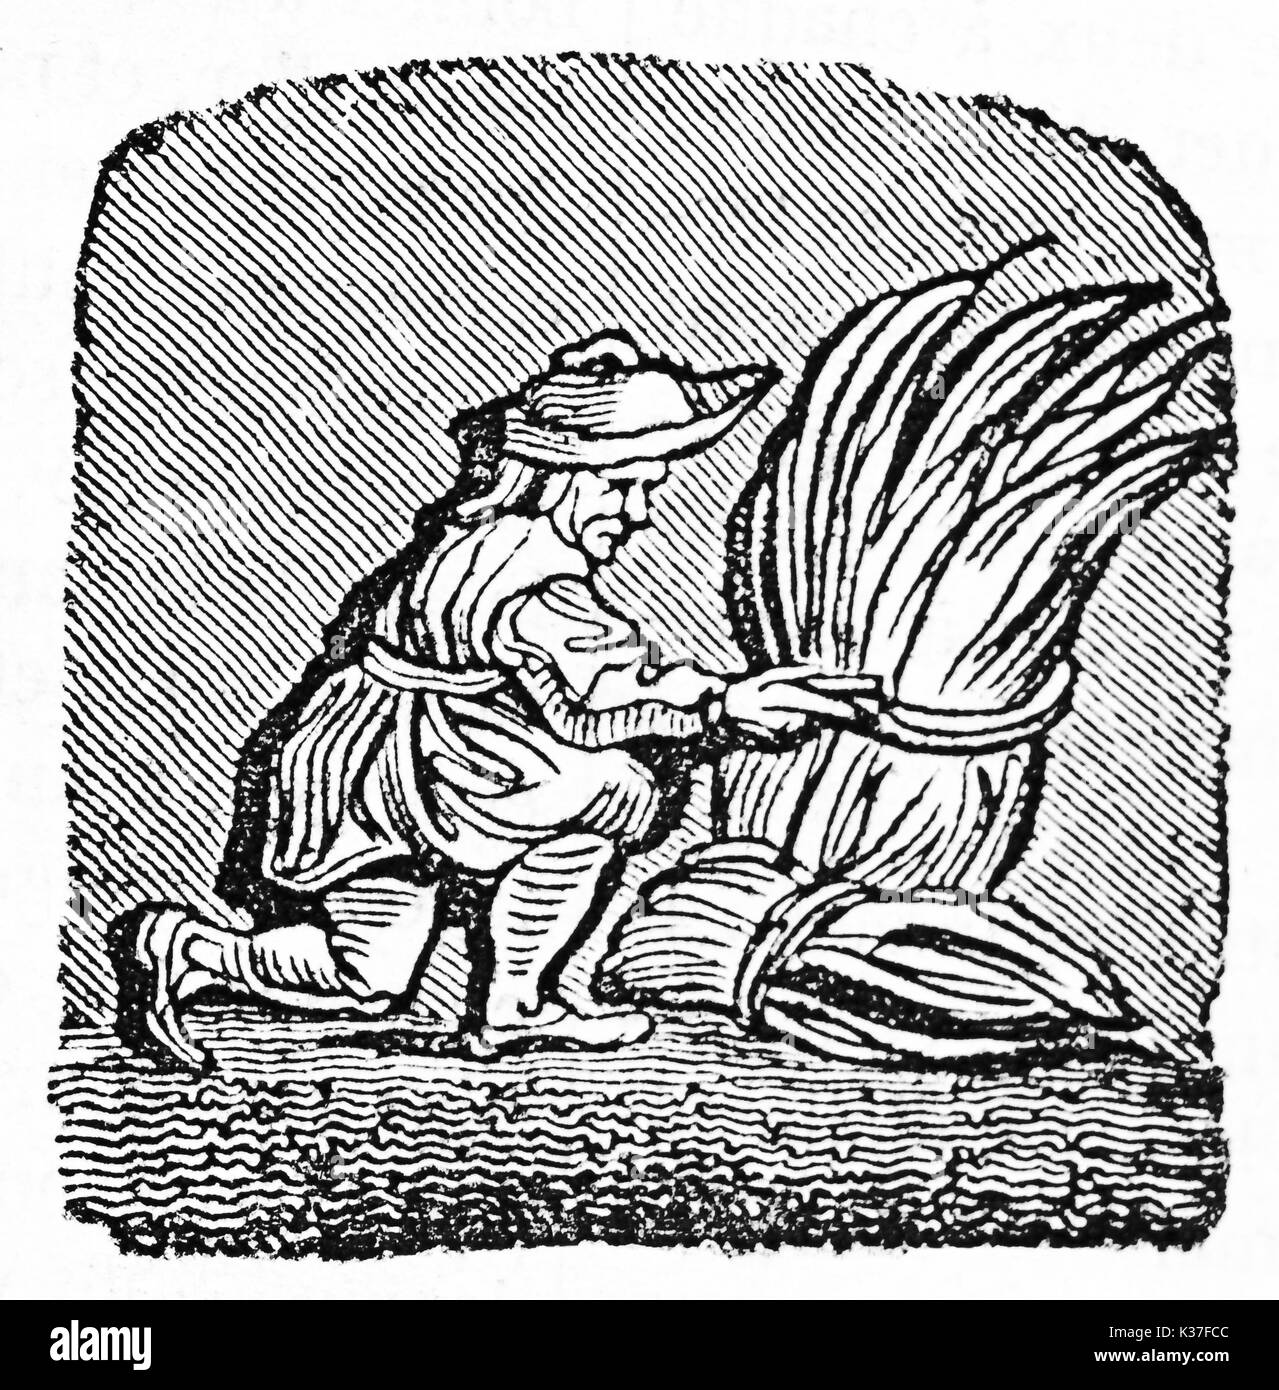 Illustration emblématique médiévale d'agriculteur avec un paquet de foin. Après avoir détruit des misericord dans Corbeil cathédrale Saint-Spire. Publié le magasin pittoresque Paris 1834 Banque D'Images